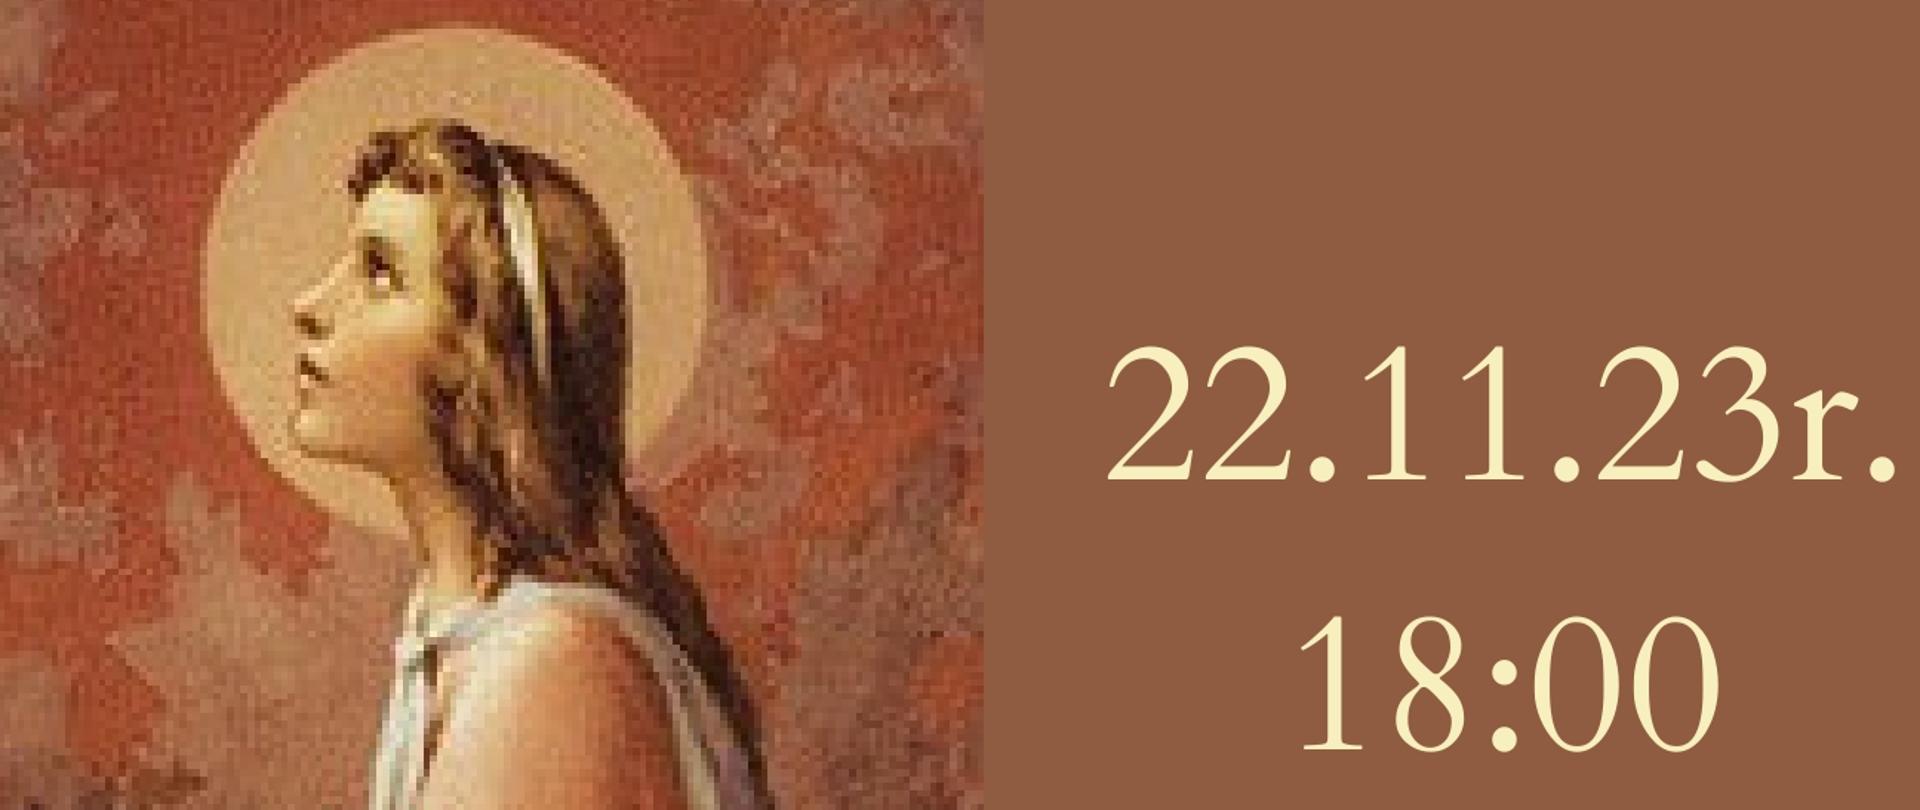 Brązowe tło na środku namalowany obraz świętej Cecylii, w koło informacje dotyczące koncertu 22 listopada 2023 r. o godz. 18.00 w Kościele Nawiedzenia NMP w Częstochowie 